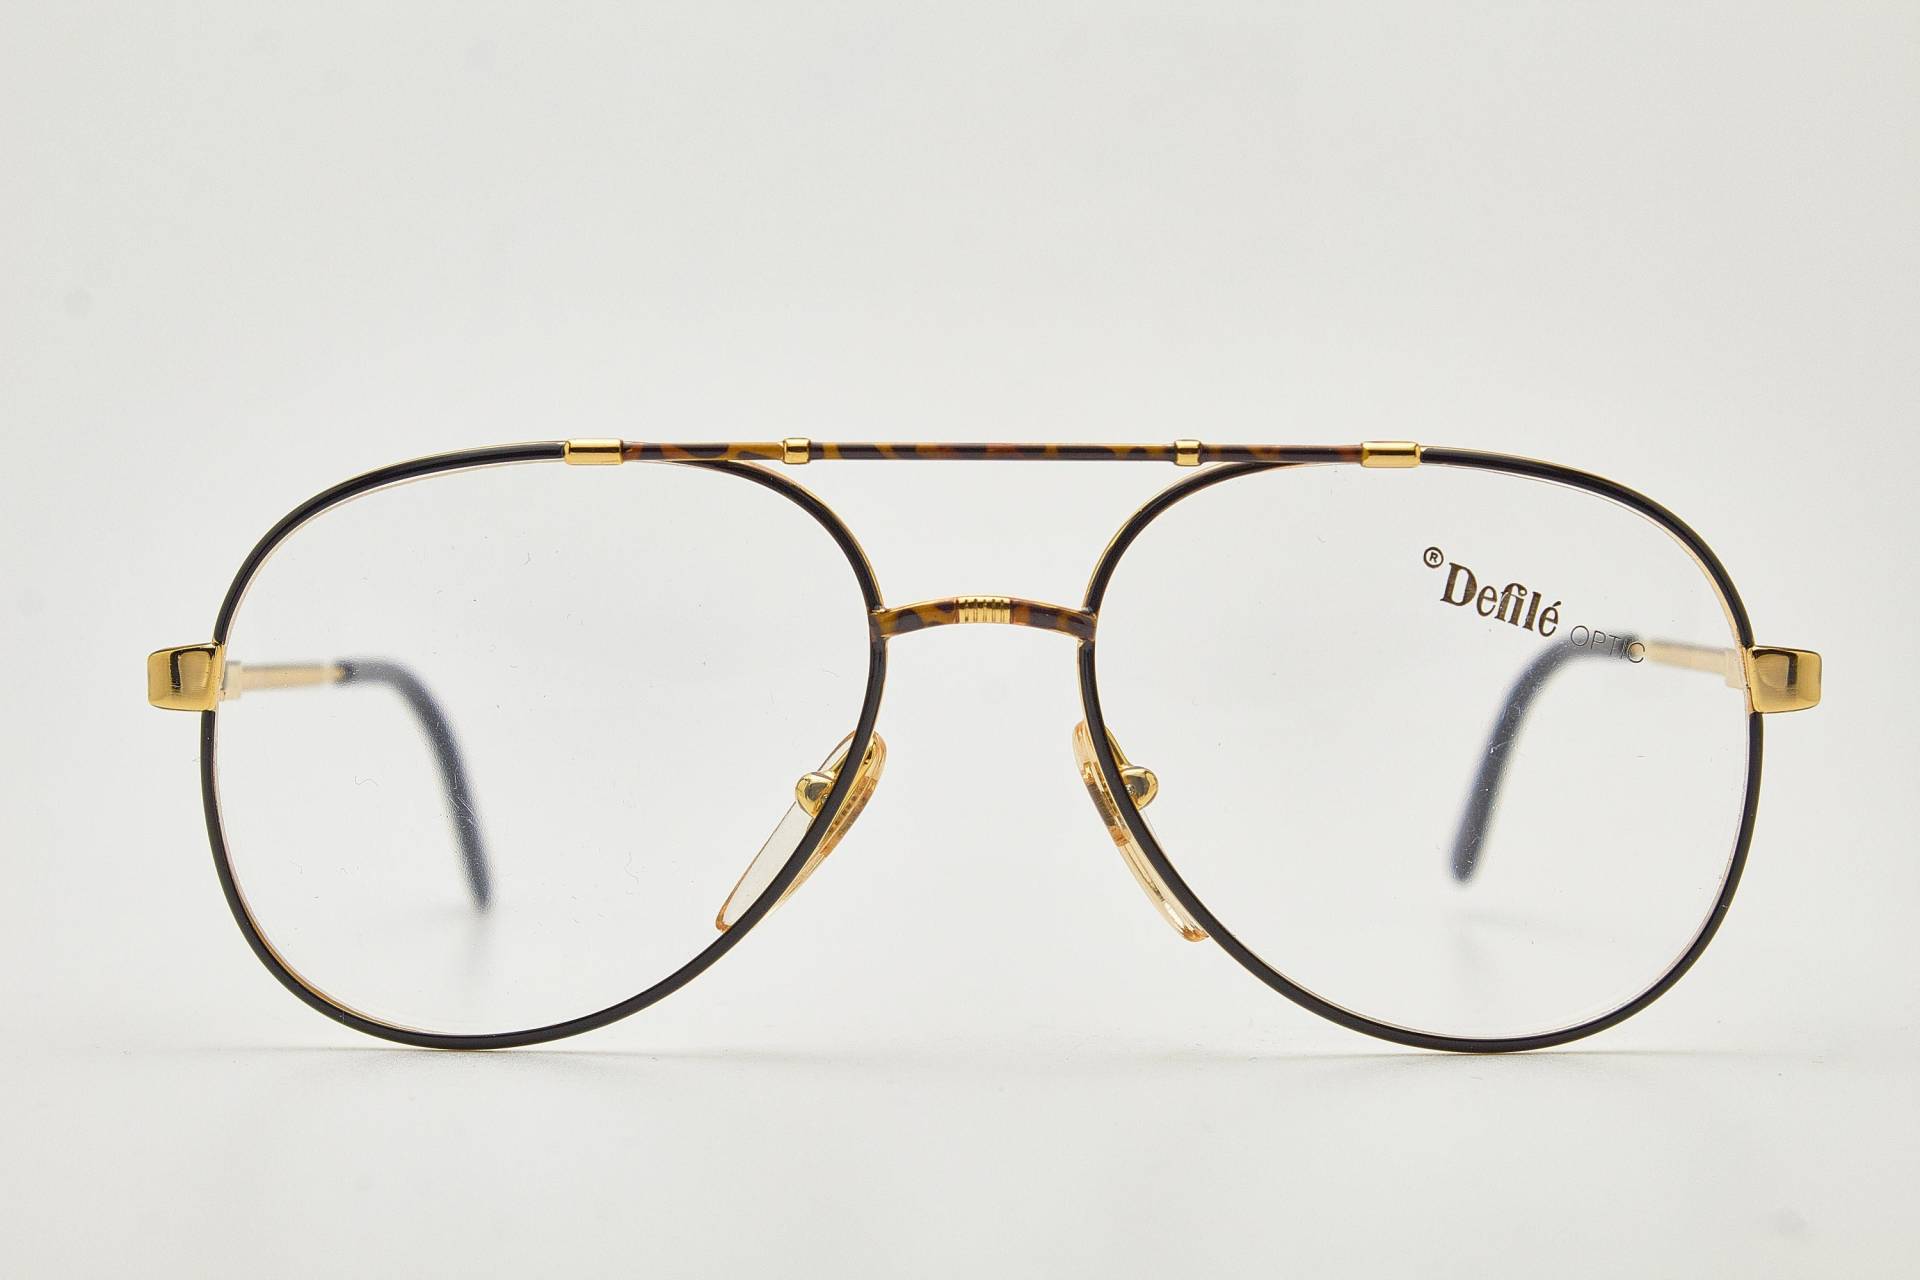 1980Er Jahre Brille/Herren Vintage Brillen Defile Braun/Gold Metallrahmen/Hipster Brillen/Pilot Sonnenbrille/Oversize Sonnenbrille/Aviator Brille von VintageGlassesVault